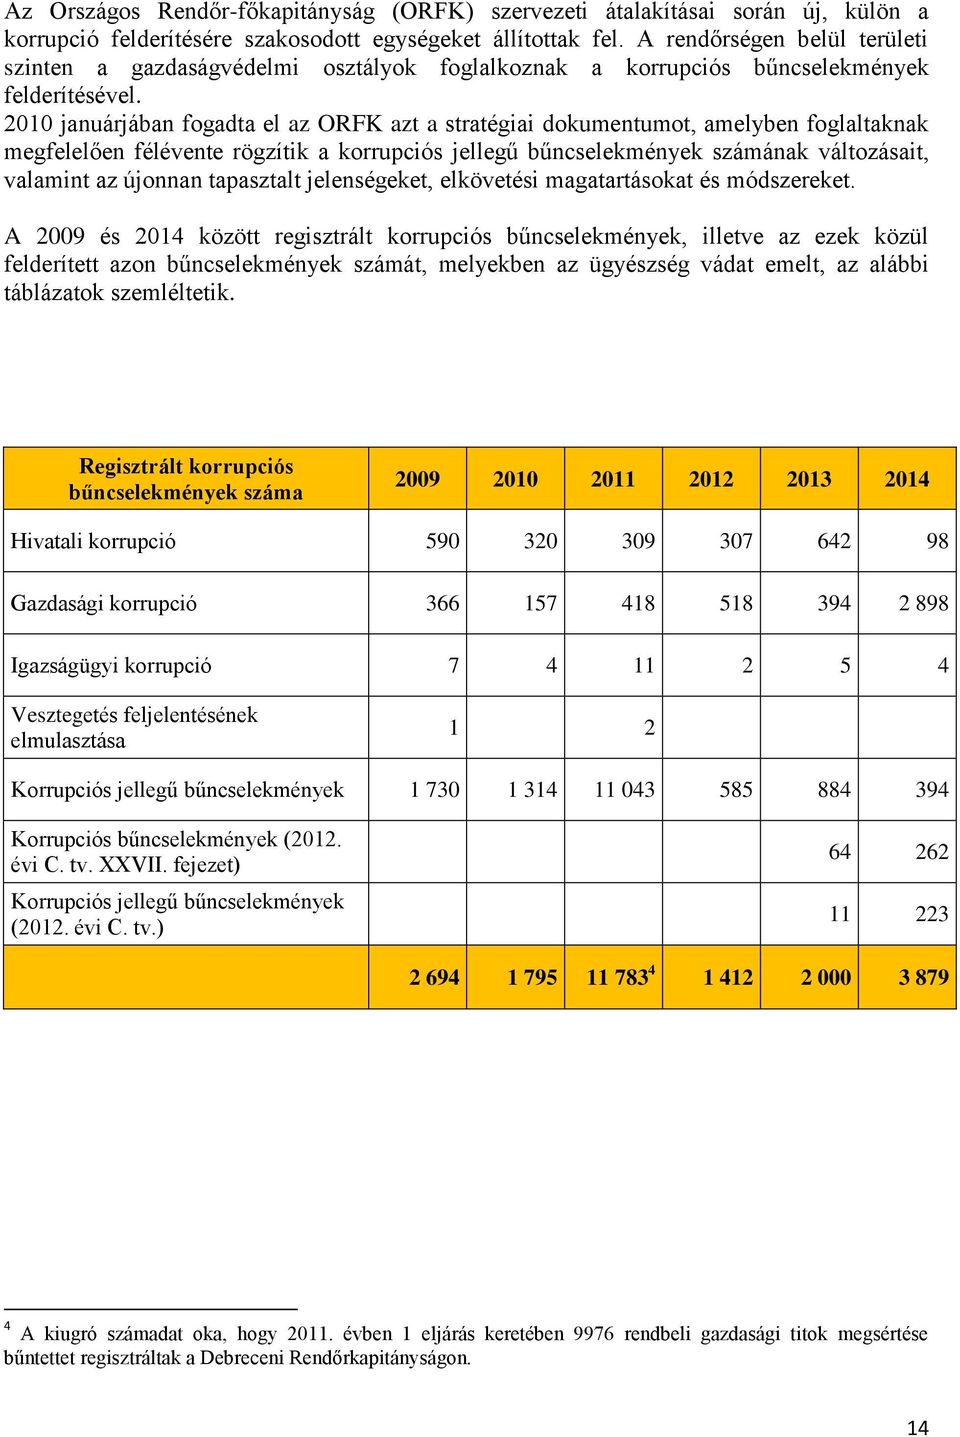 2010 januárjában fogadta el az ORFK azt a stratégiai dokumentumot, amelyben foglaltaknak megfelelően félévente rögzítik a korrupciós jellegű bűncselekmények számának változásait, valamint az újonnan